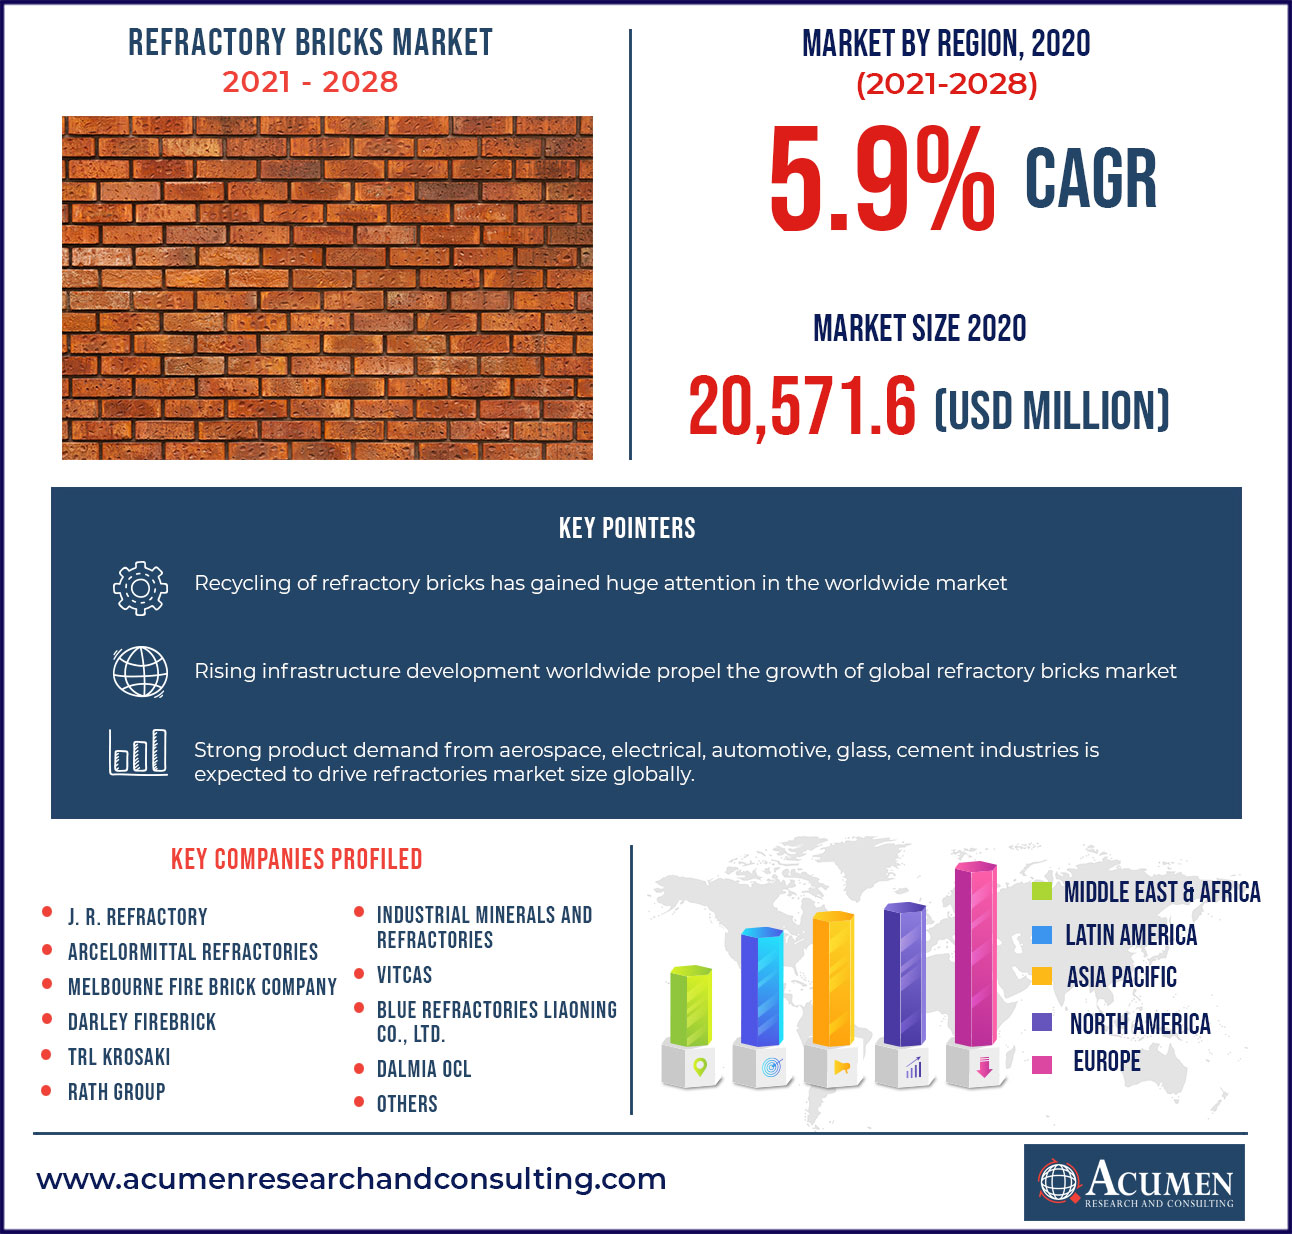 Refractory Bricks Market Report 2021 - 2028